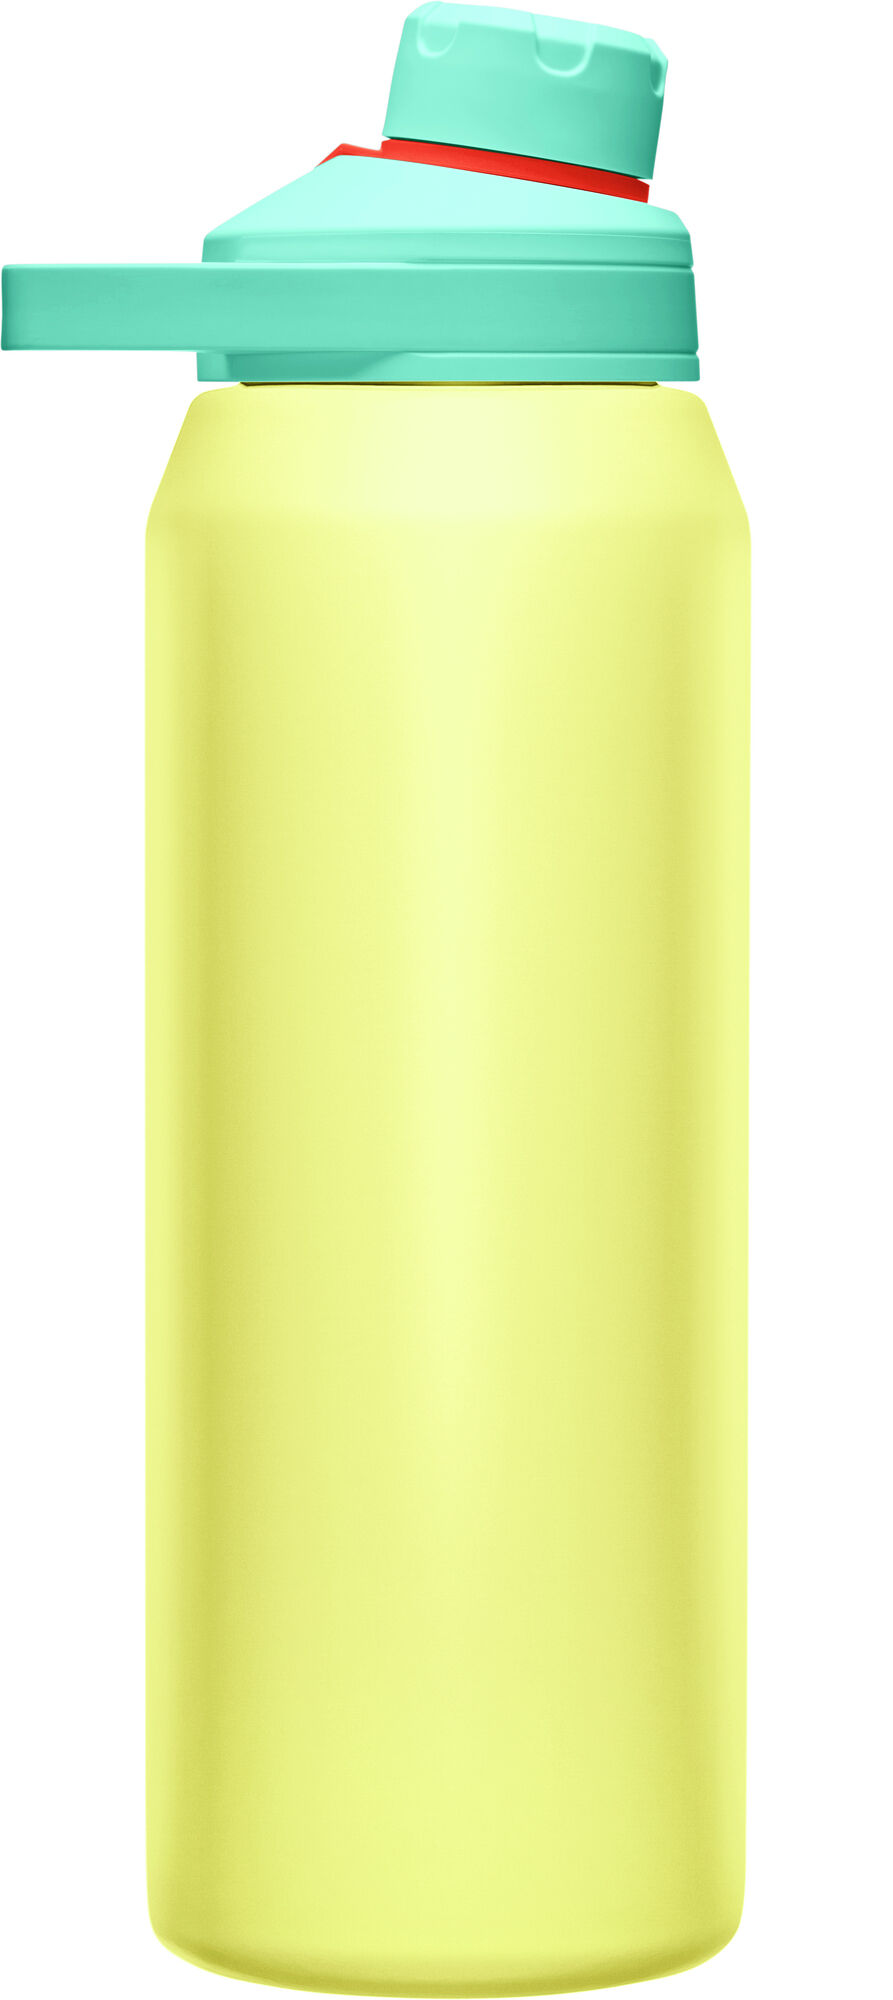 DC'd Iris Details about   Camelbak Chute Mag 1L Water Bottle 